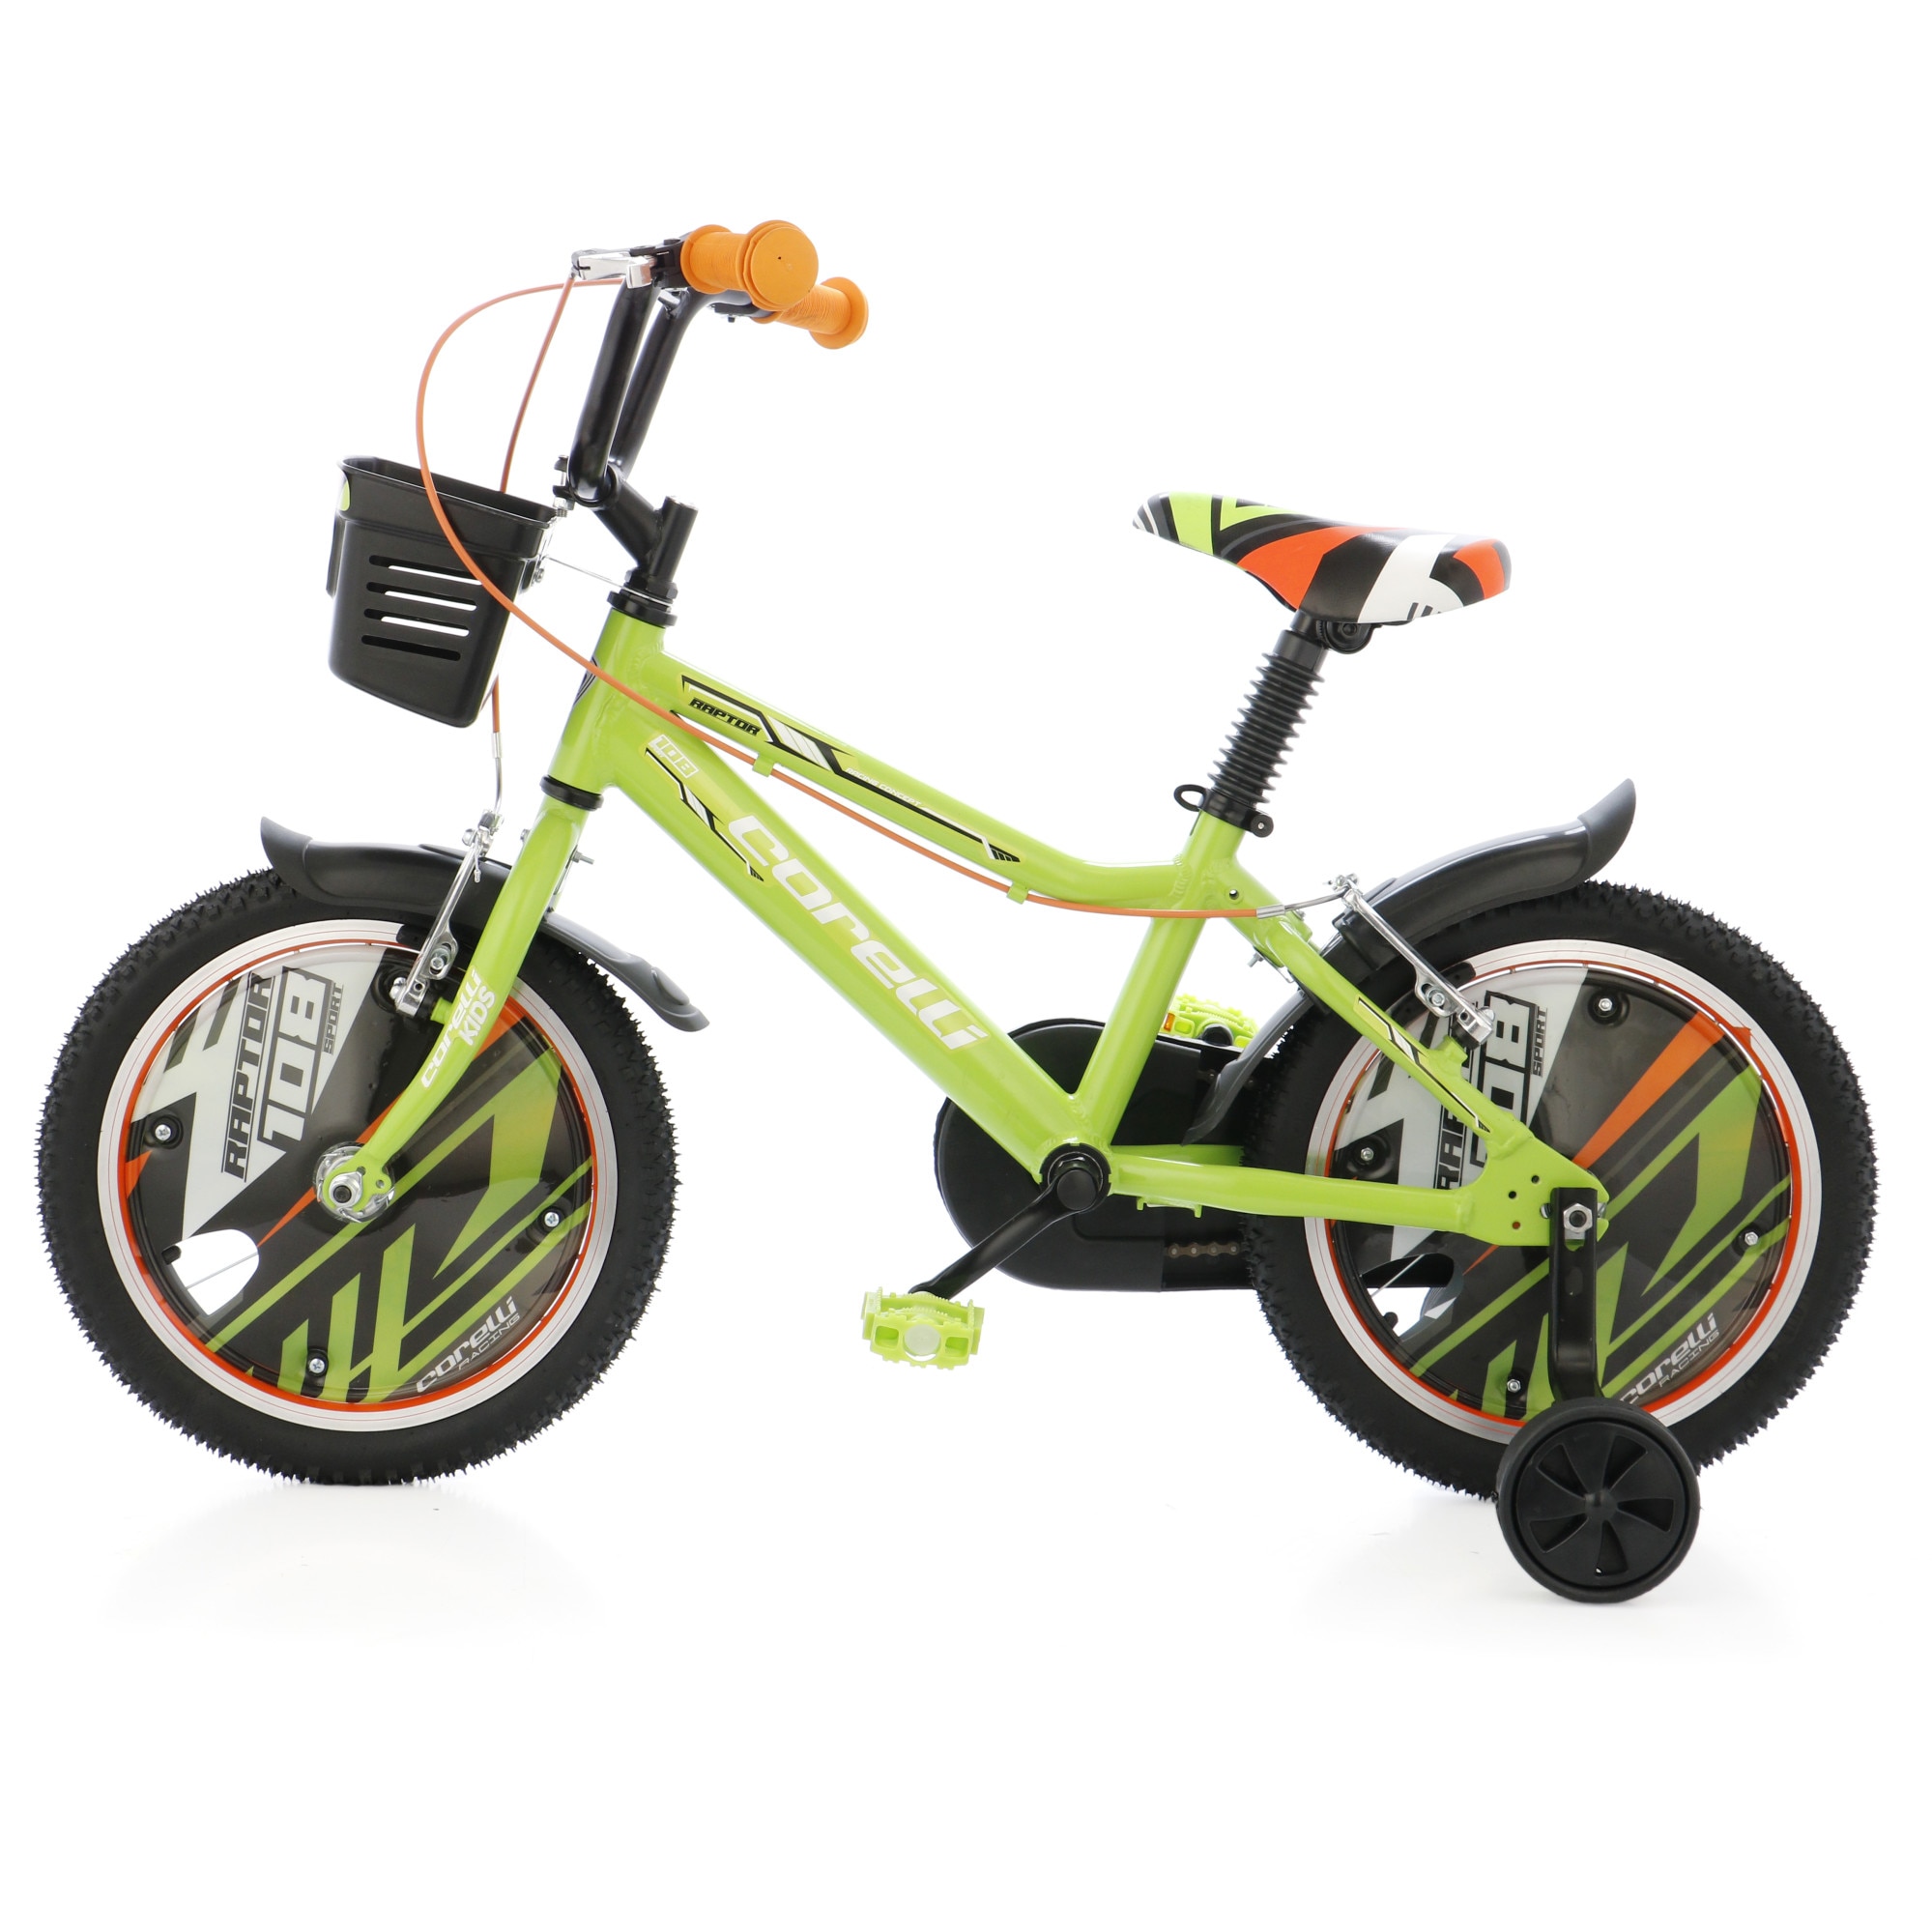 Fotografie Bicicleta copii Corelli Raptor 16", single-speed, culoare verde-negru-alb, accesorii incluse